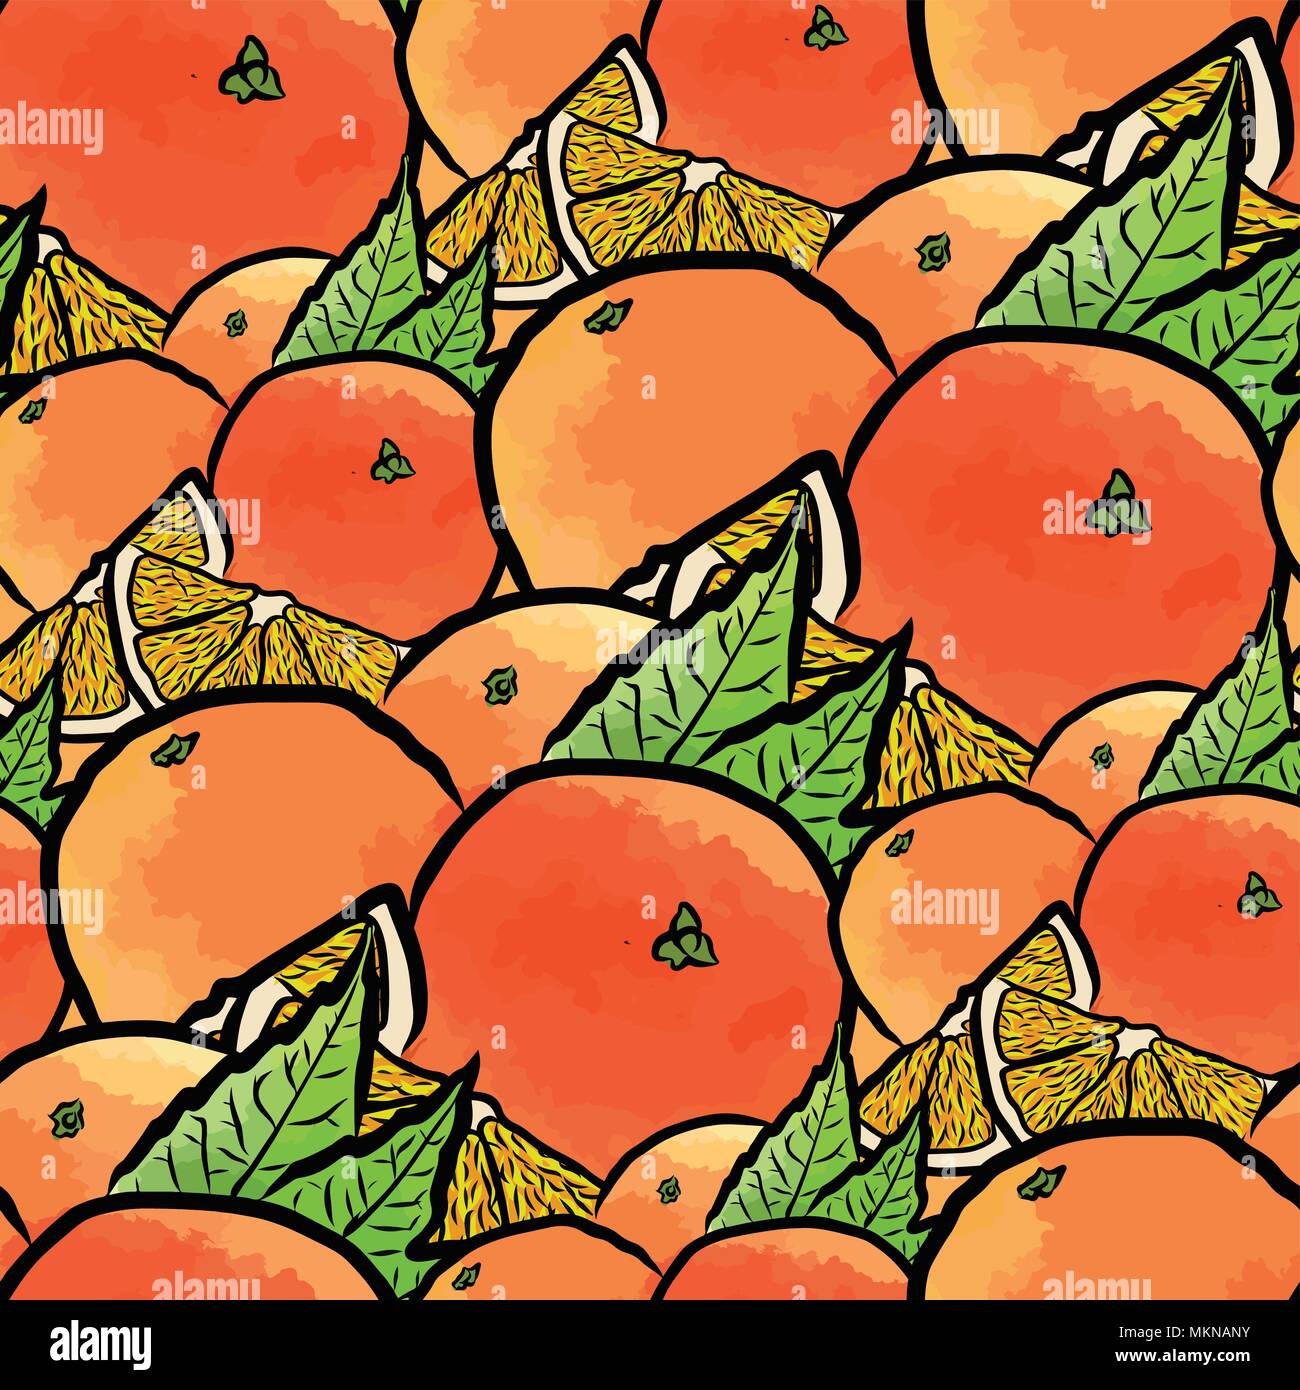 Vektor nahtlose Muster von Orangen. von Hand gezeichnet und farbige Abbildung Stock Vektor